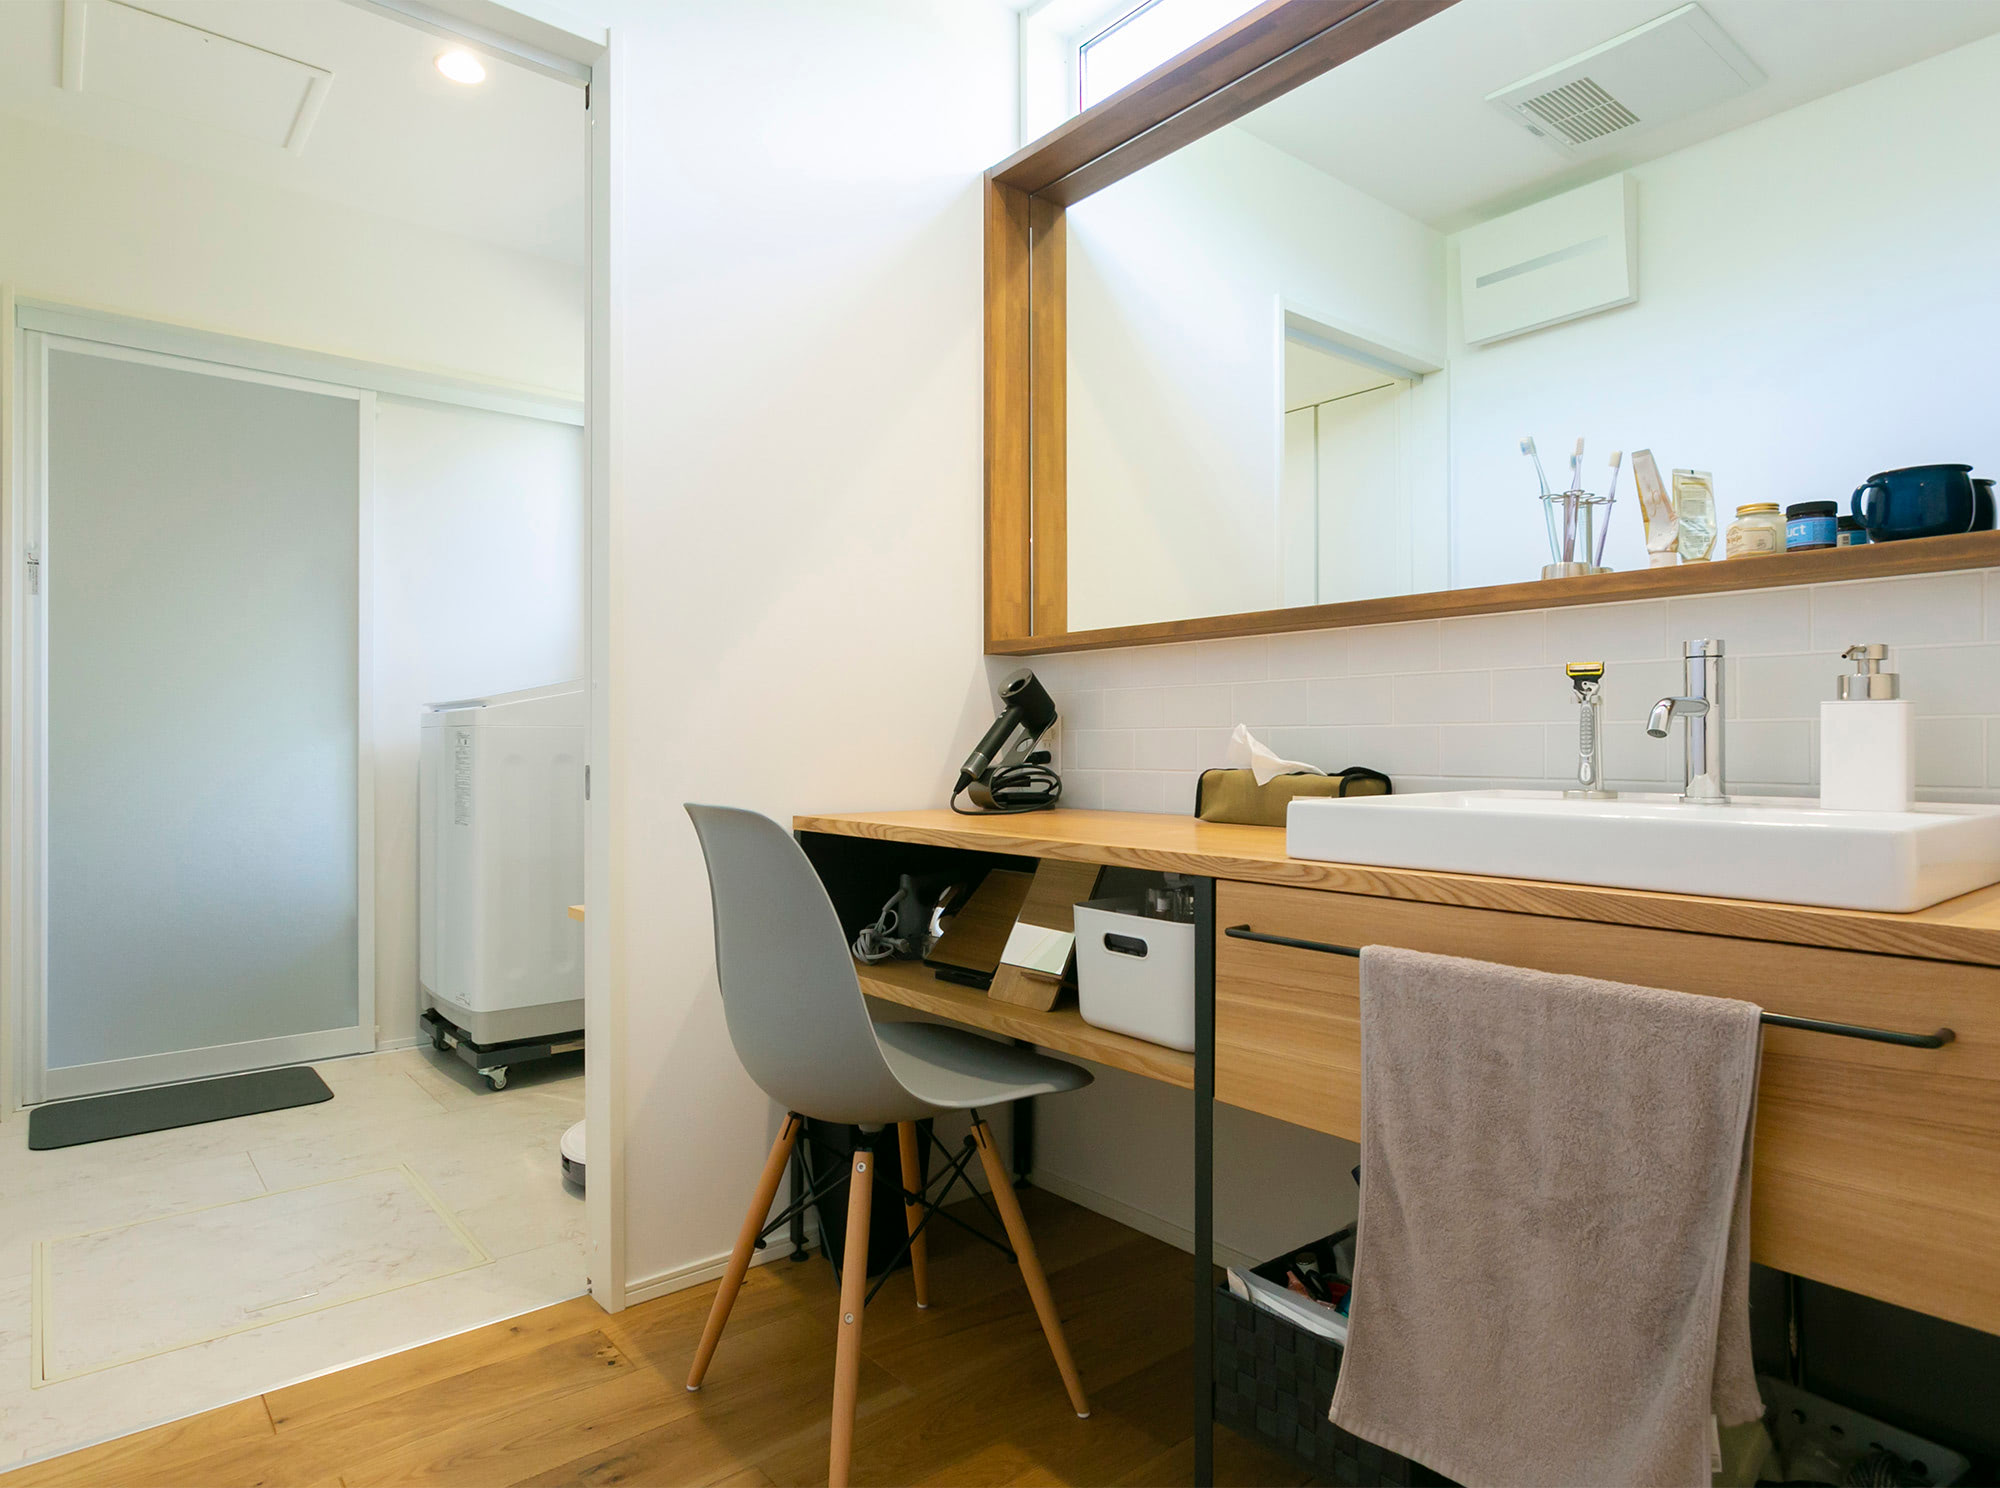 キッチンから洗面、脱衣室へとつながる動線が家事効率を高めています。脱衣室と洗面スペースを分けているのもポイントです。